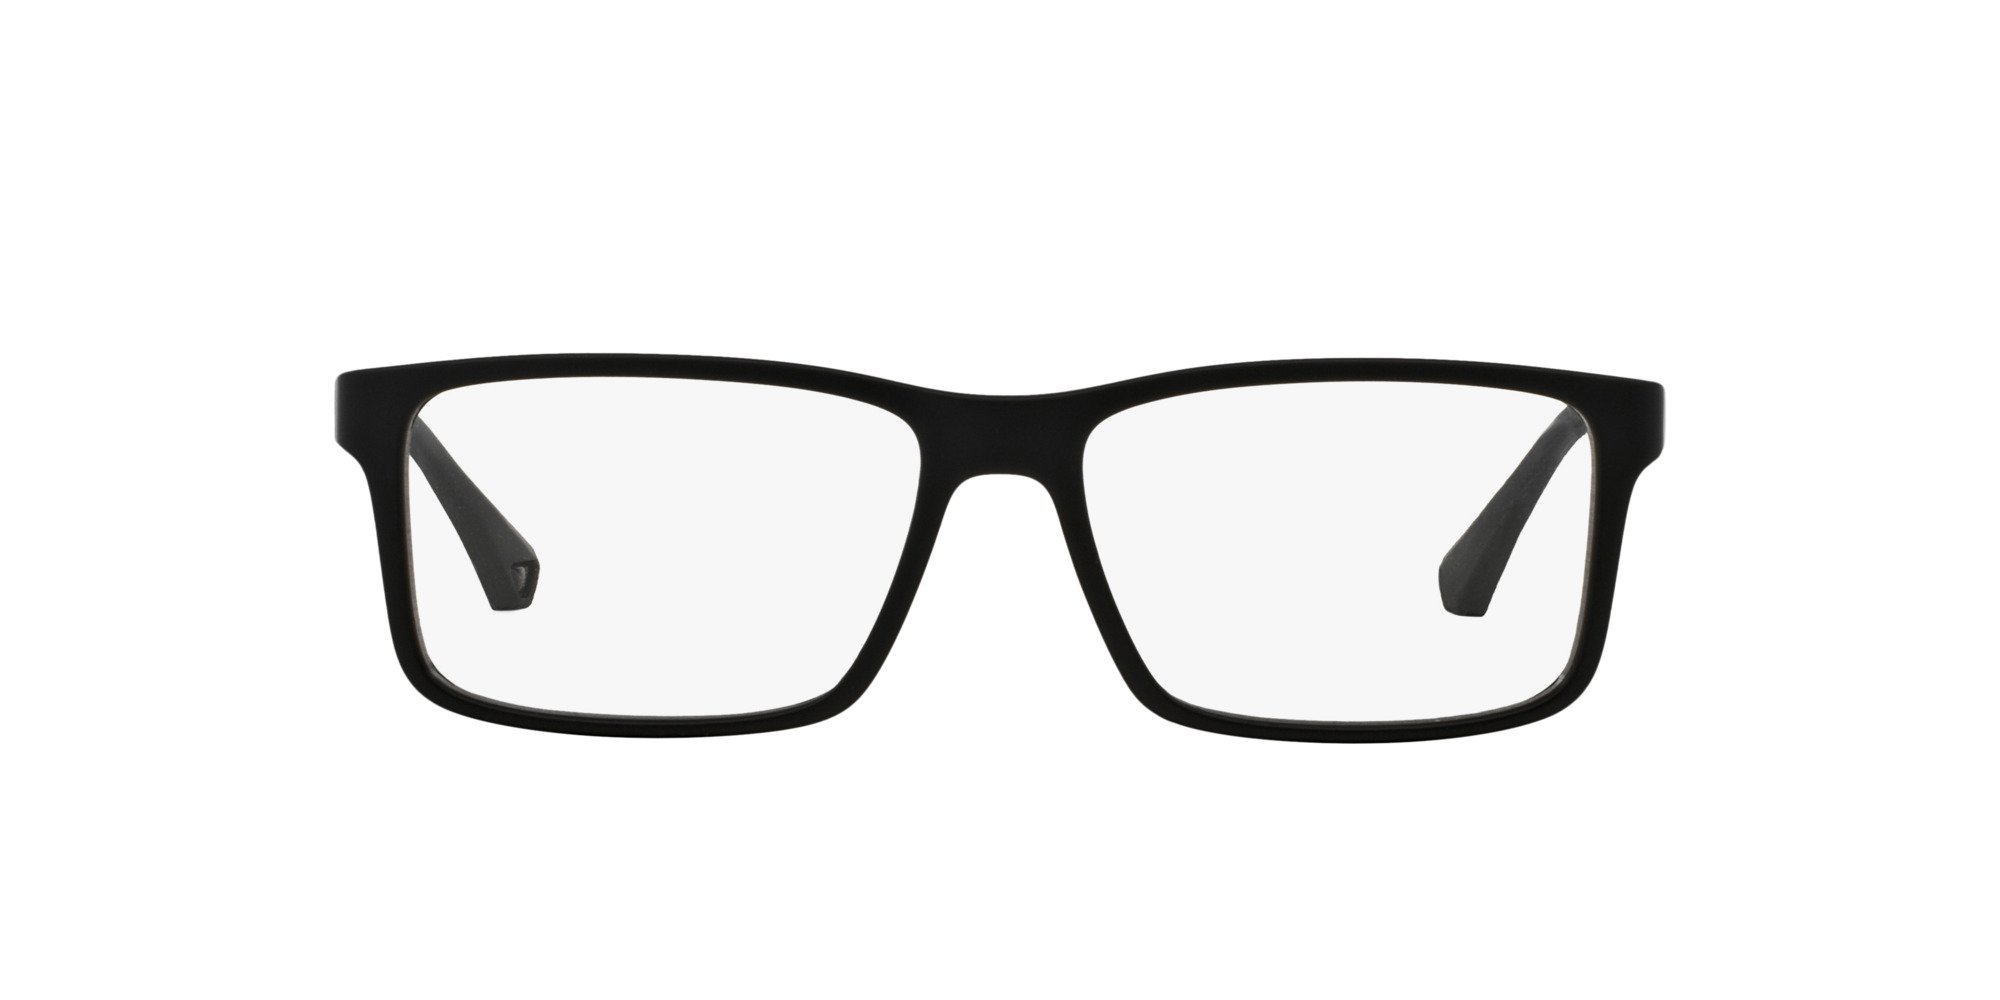 Das Bild zeigt die Korrektionsbrille EA3038 5063 von der Marke Emporio Armani in Schwarz.